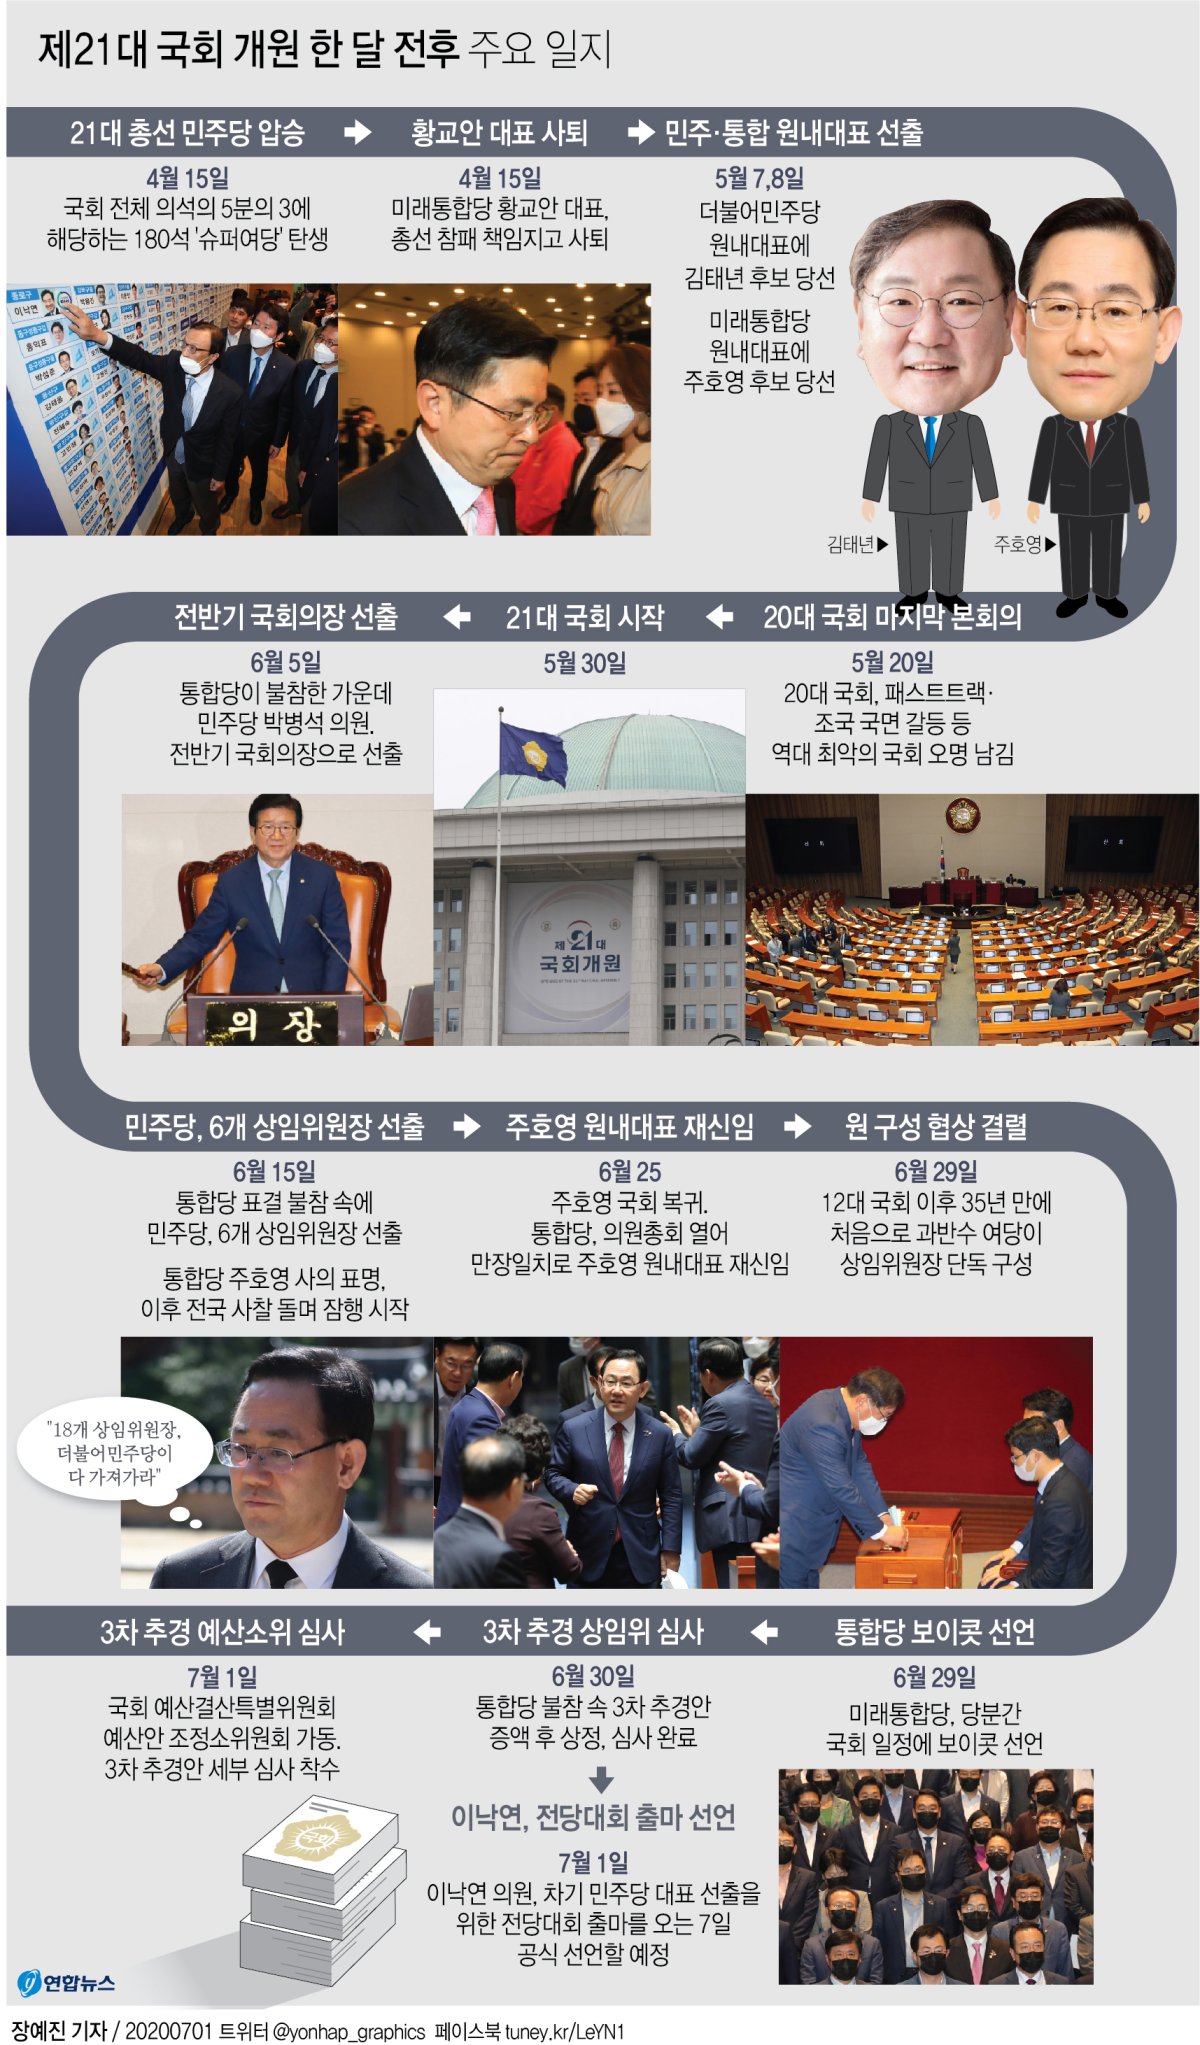 [그래픽] 제21대 국회 개원 한 달 전후 주요 일지